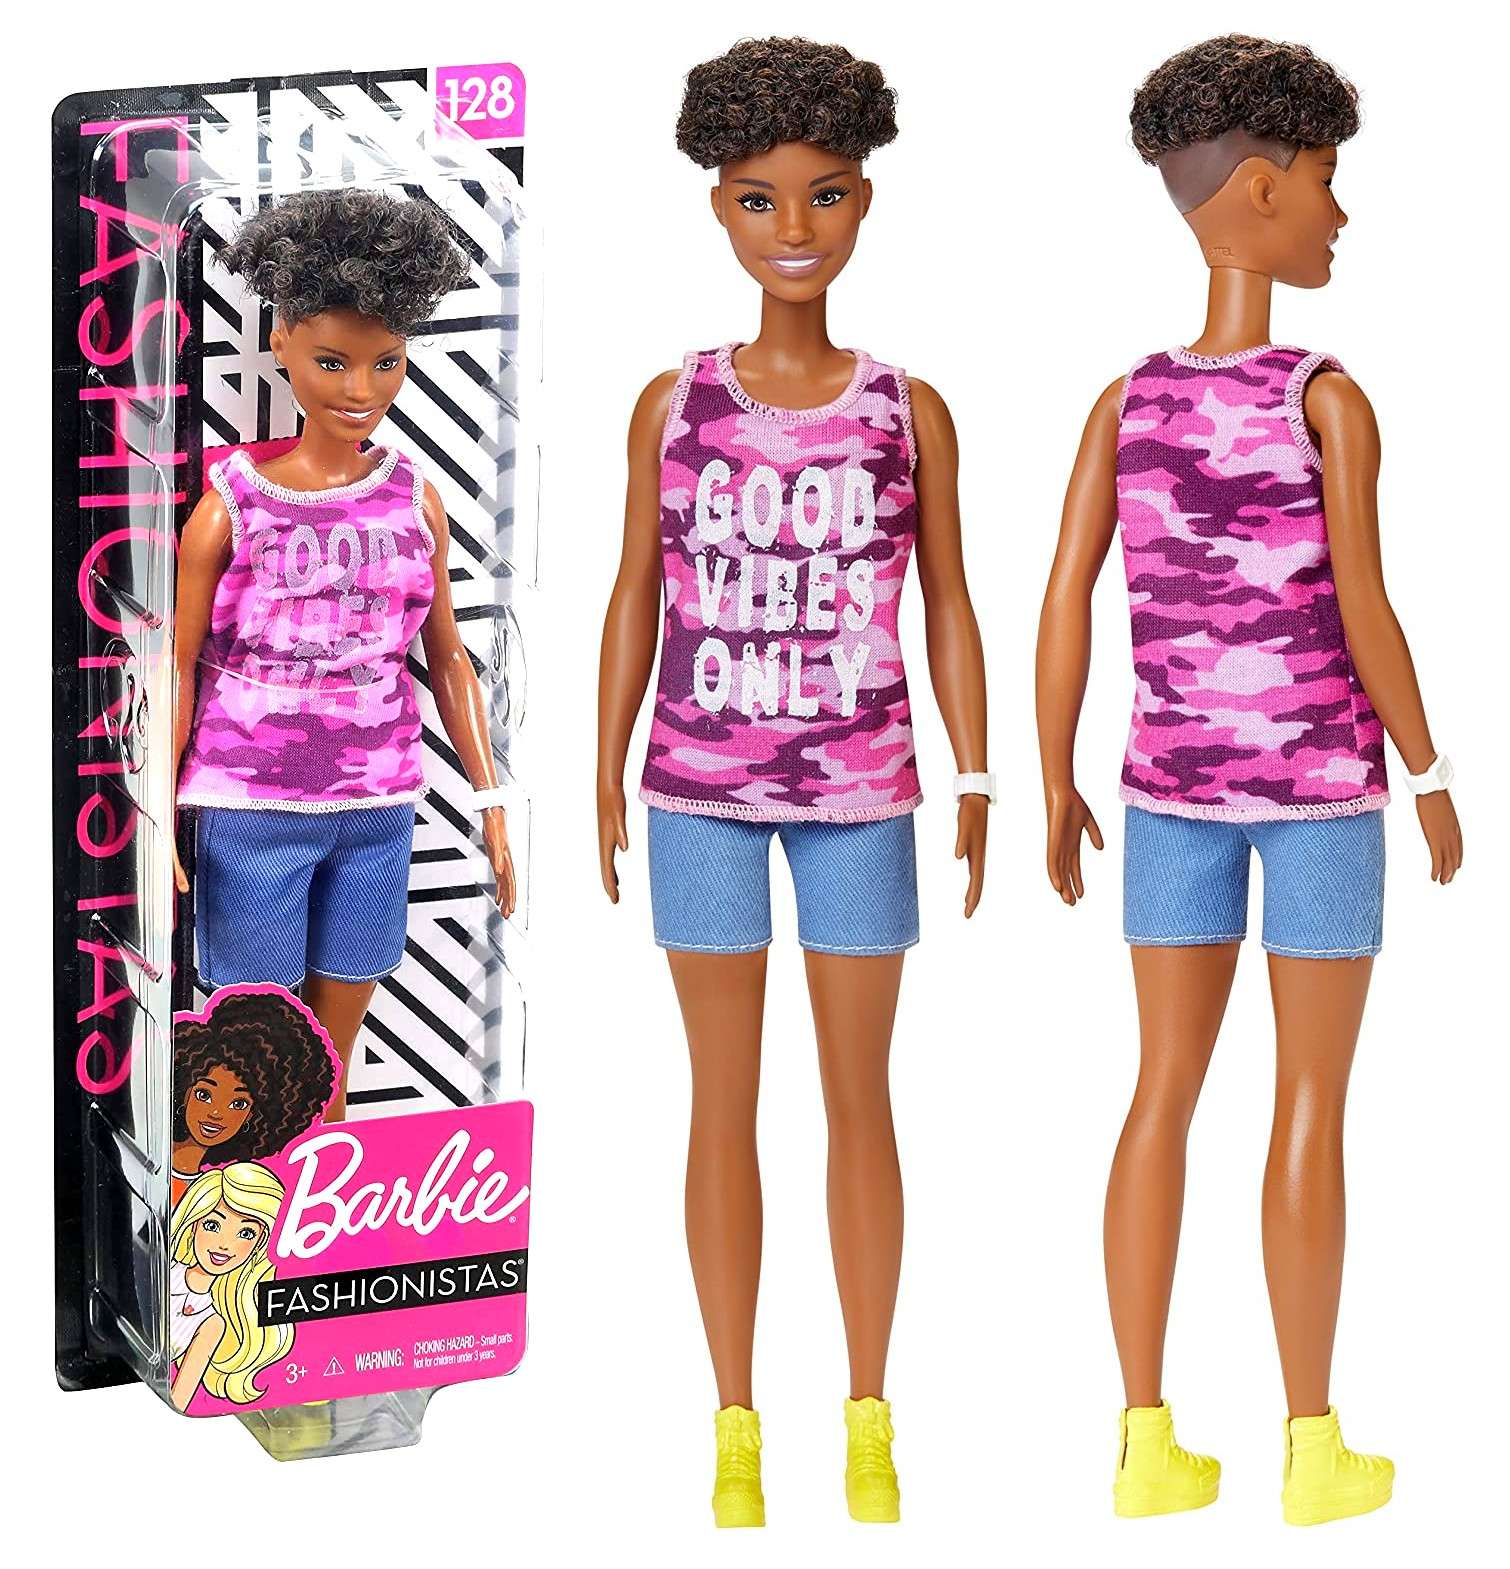 Barbie modna stylowa lalka Fashionistas